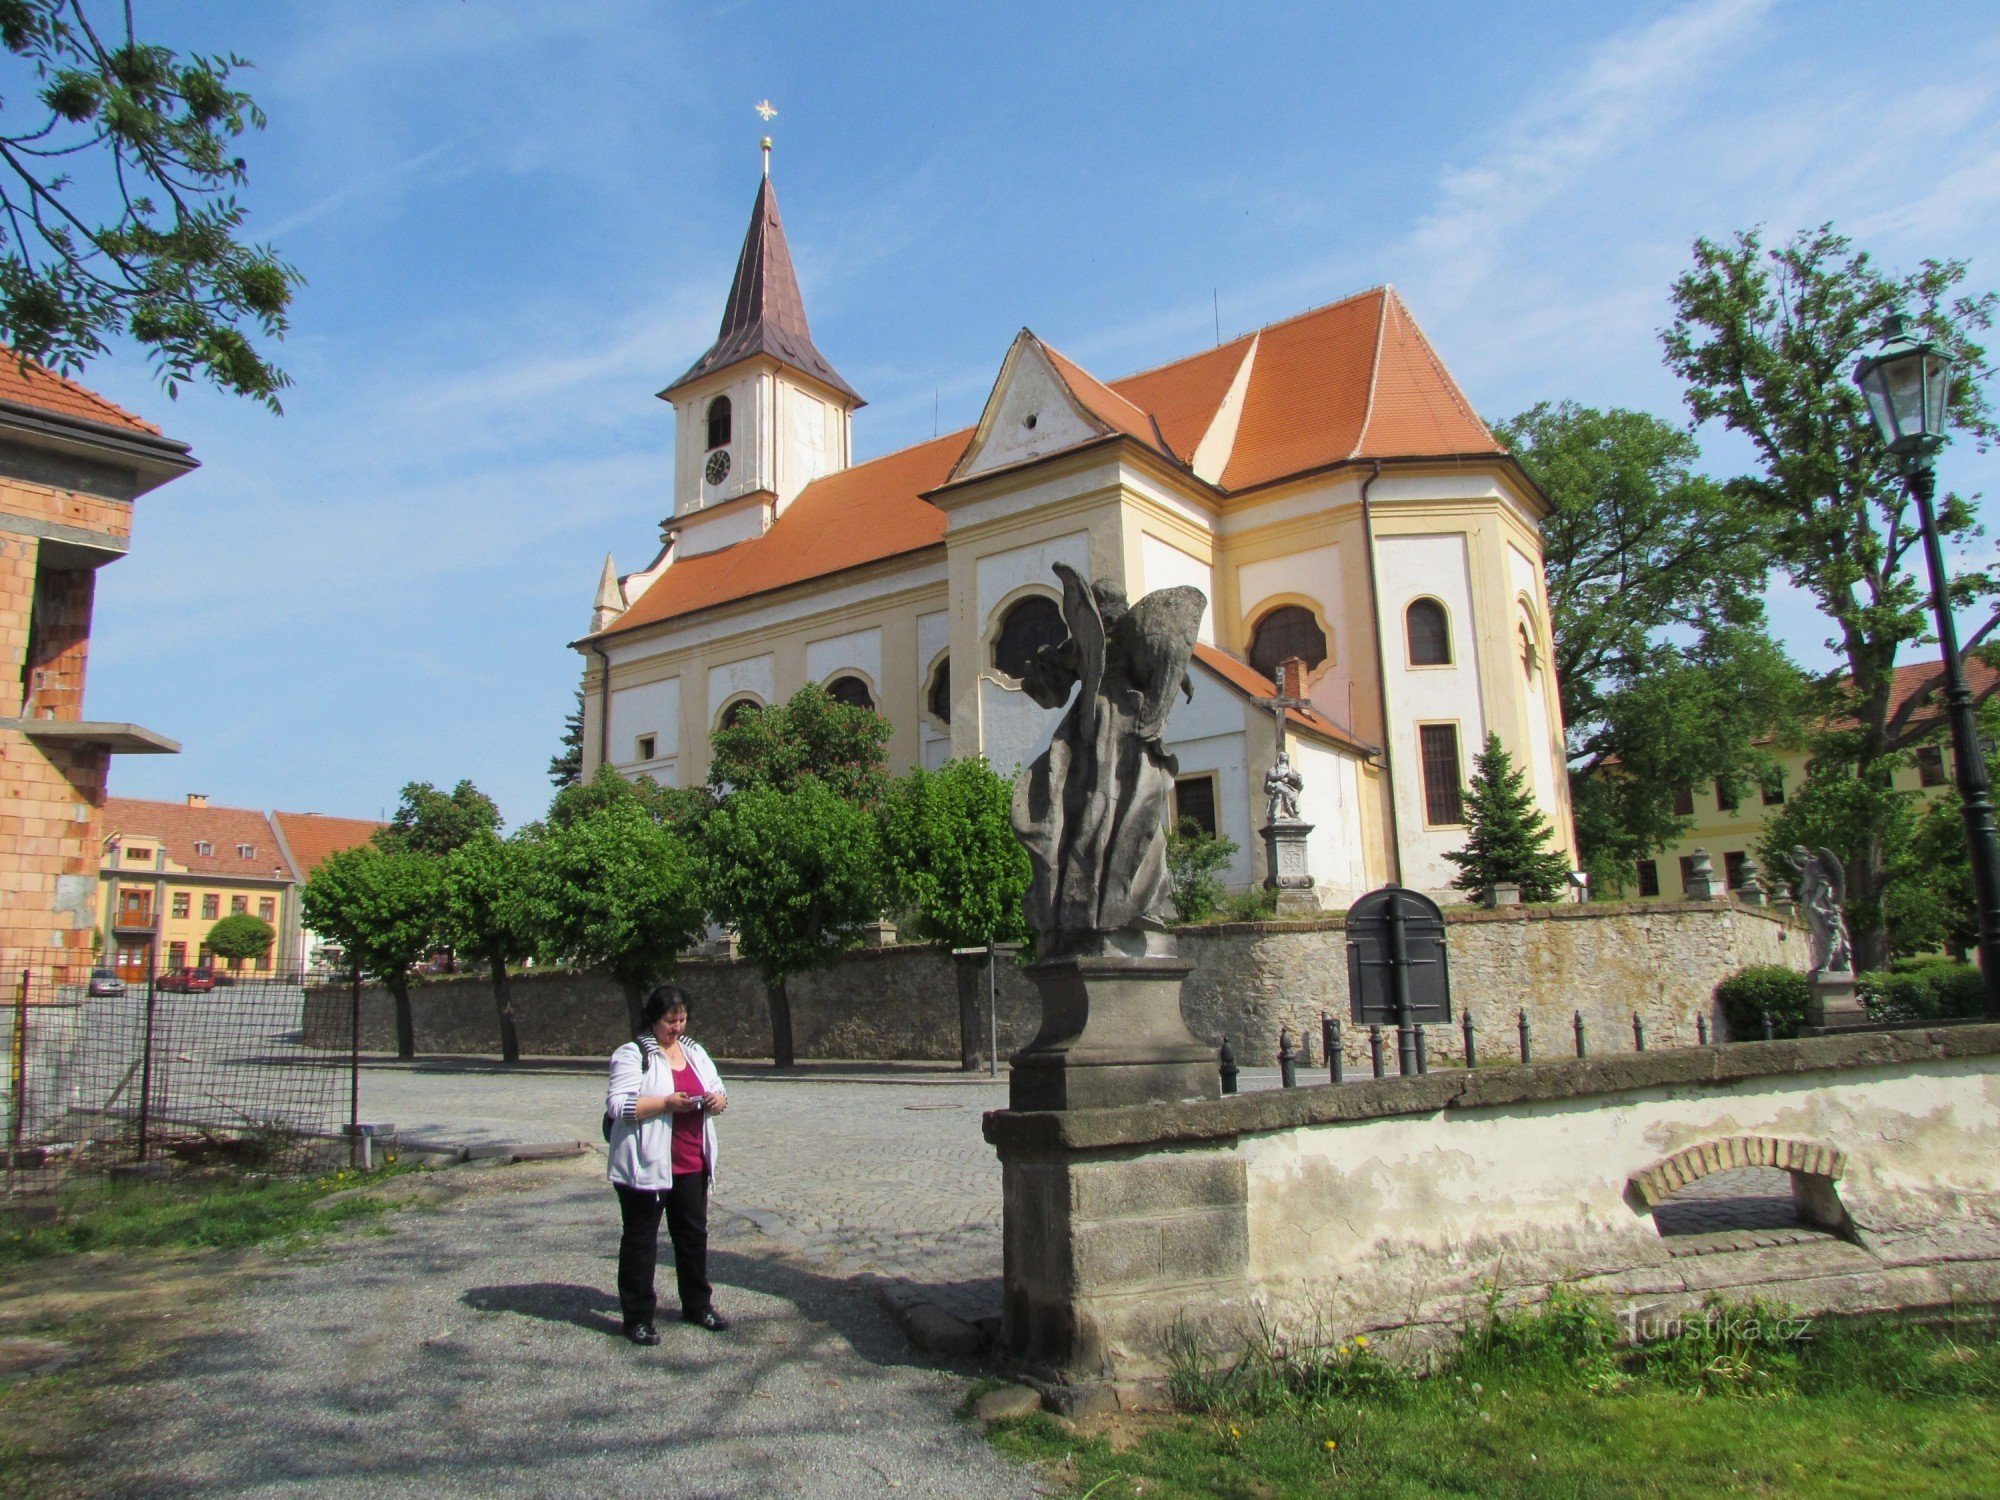 To the castle to Náměšti nad Oslavou and a walk through Třebíč